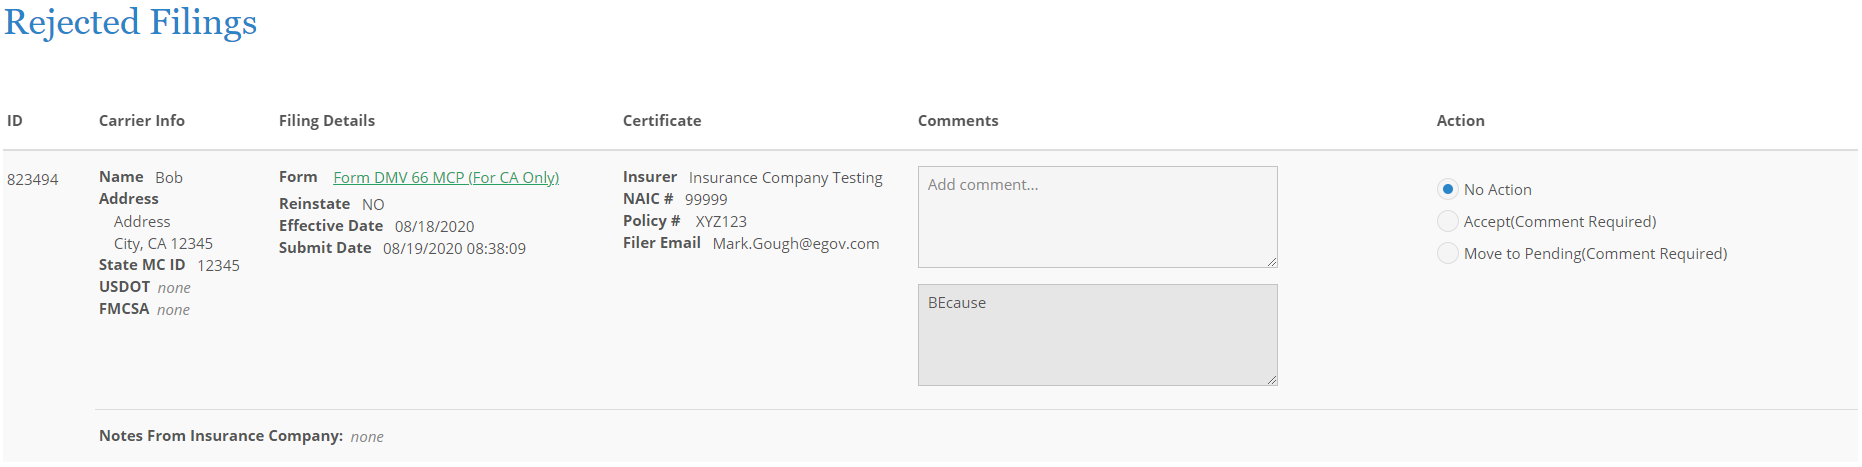 Screenshot of Rejected Filings interface in NIC Insurance Filings.